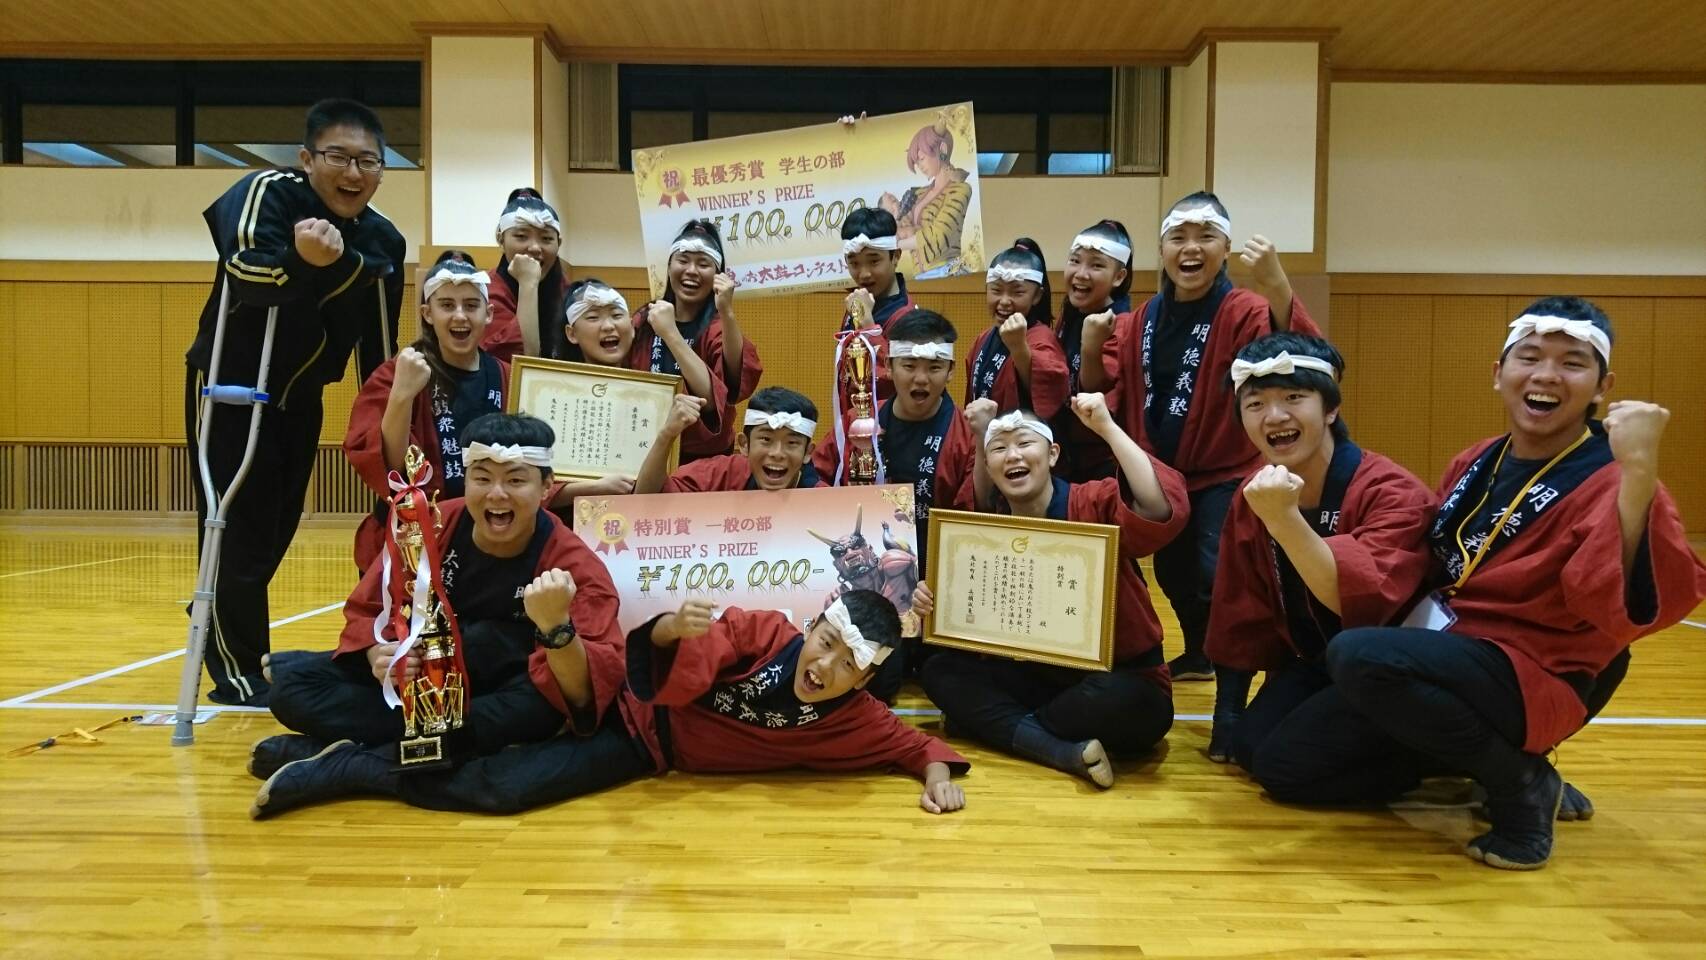 2018年鬼のお太鼓コンテスト一般の部 特別賞・学生の部最優秀賞 受賞記念